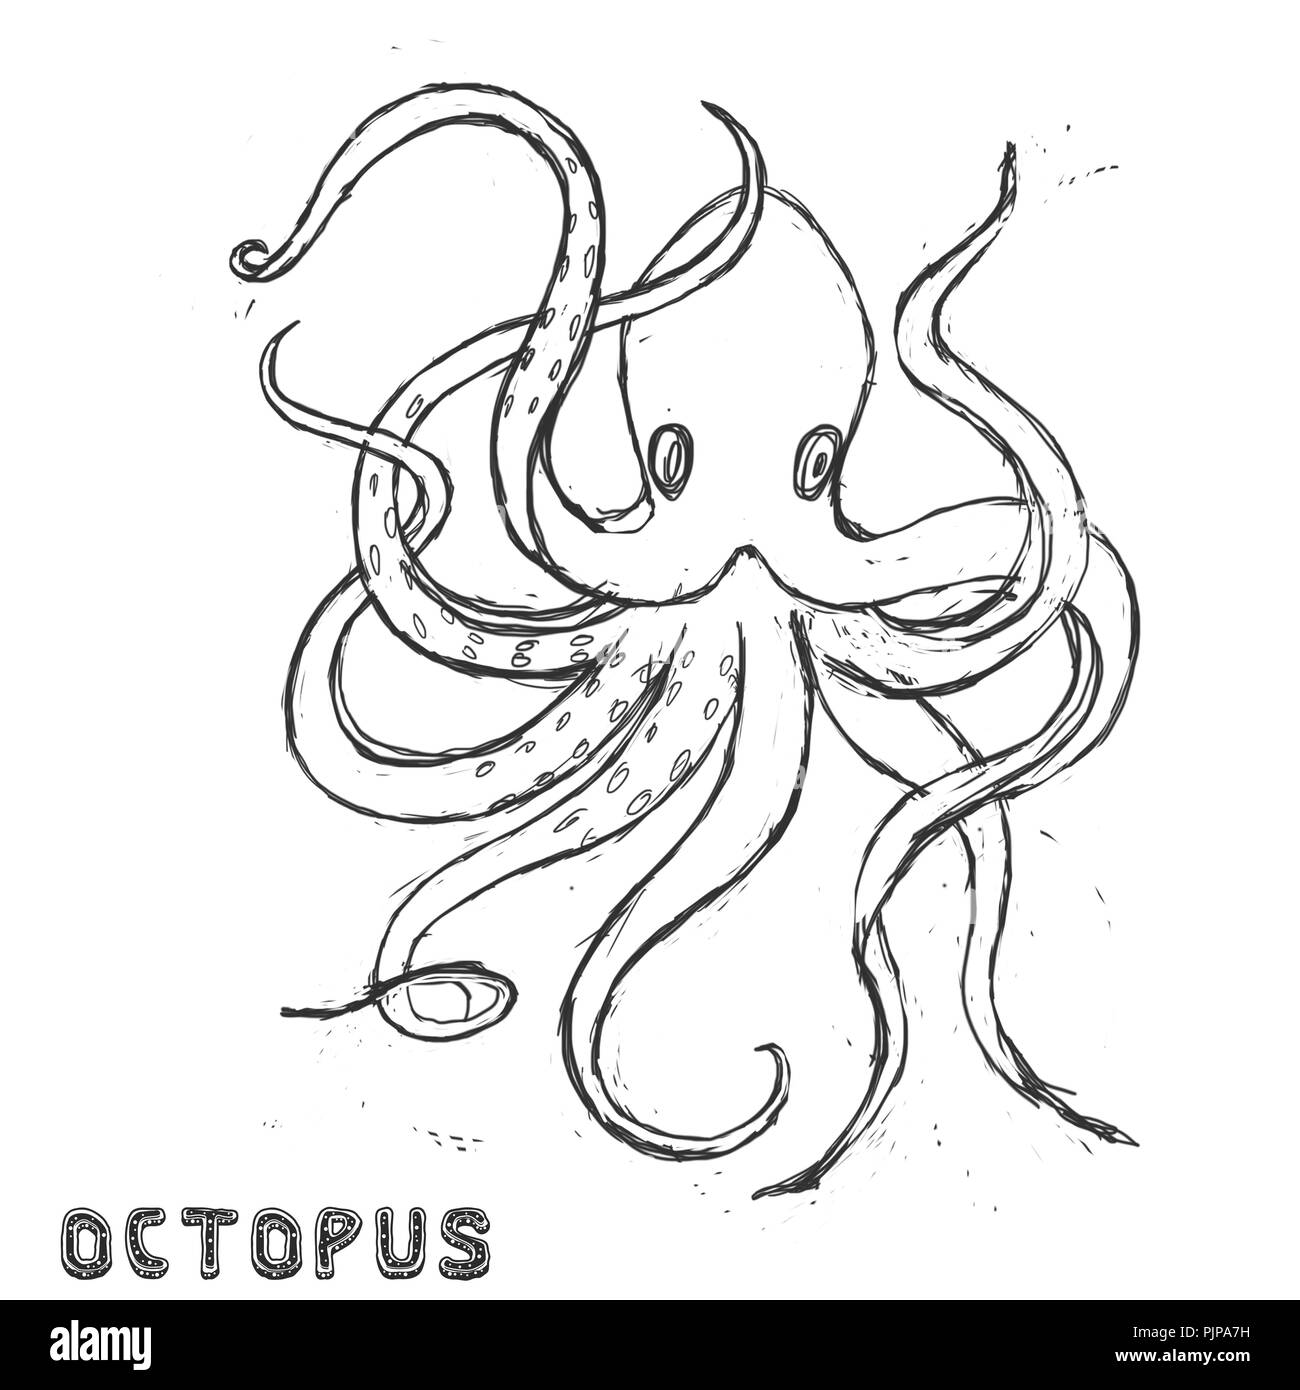 Caractère bête mer animal mignon géométrique dessin illustration océan polaire visage yeux octopus funny sea life couleur blanc et noir profond Antarctique blu Banque D'Images